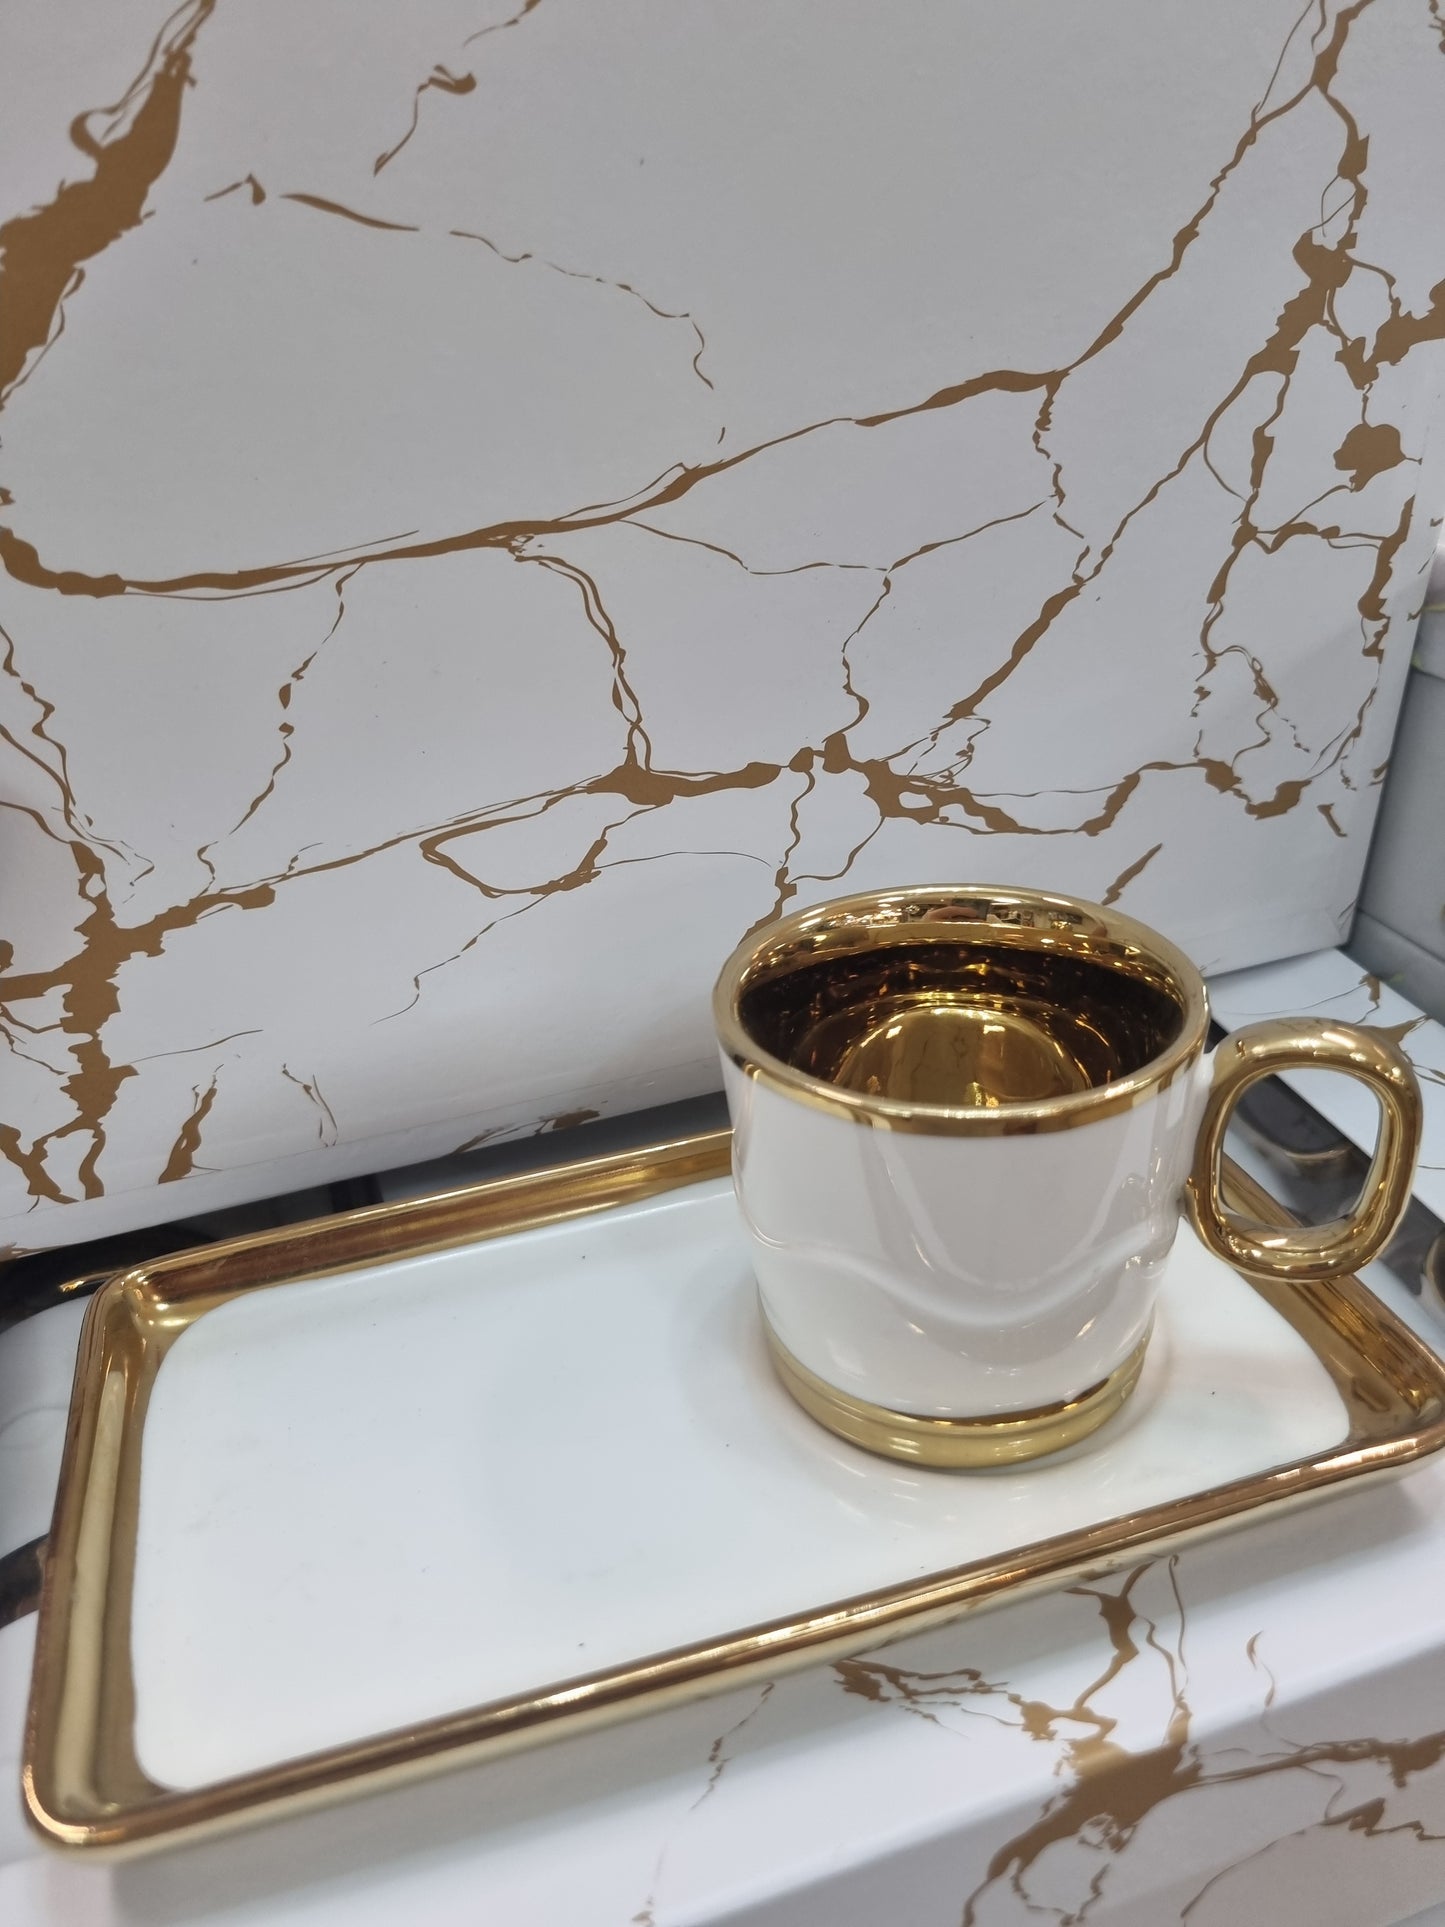 Tyrkisk/Arabiske mocca Kaffe Kopper - Hvid Med Guldkant 12 stk 6stk kopper 6 stk underkopper - Løven Home